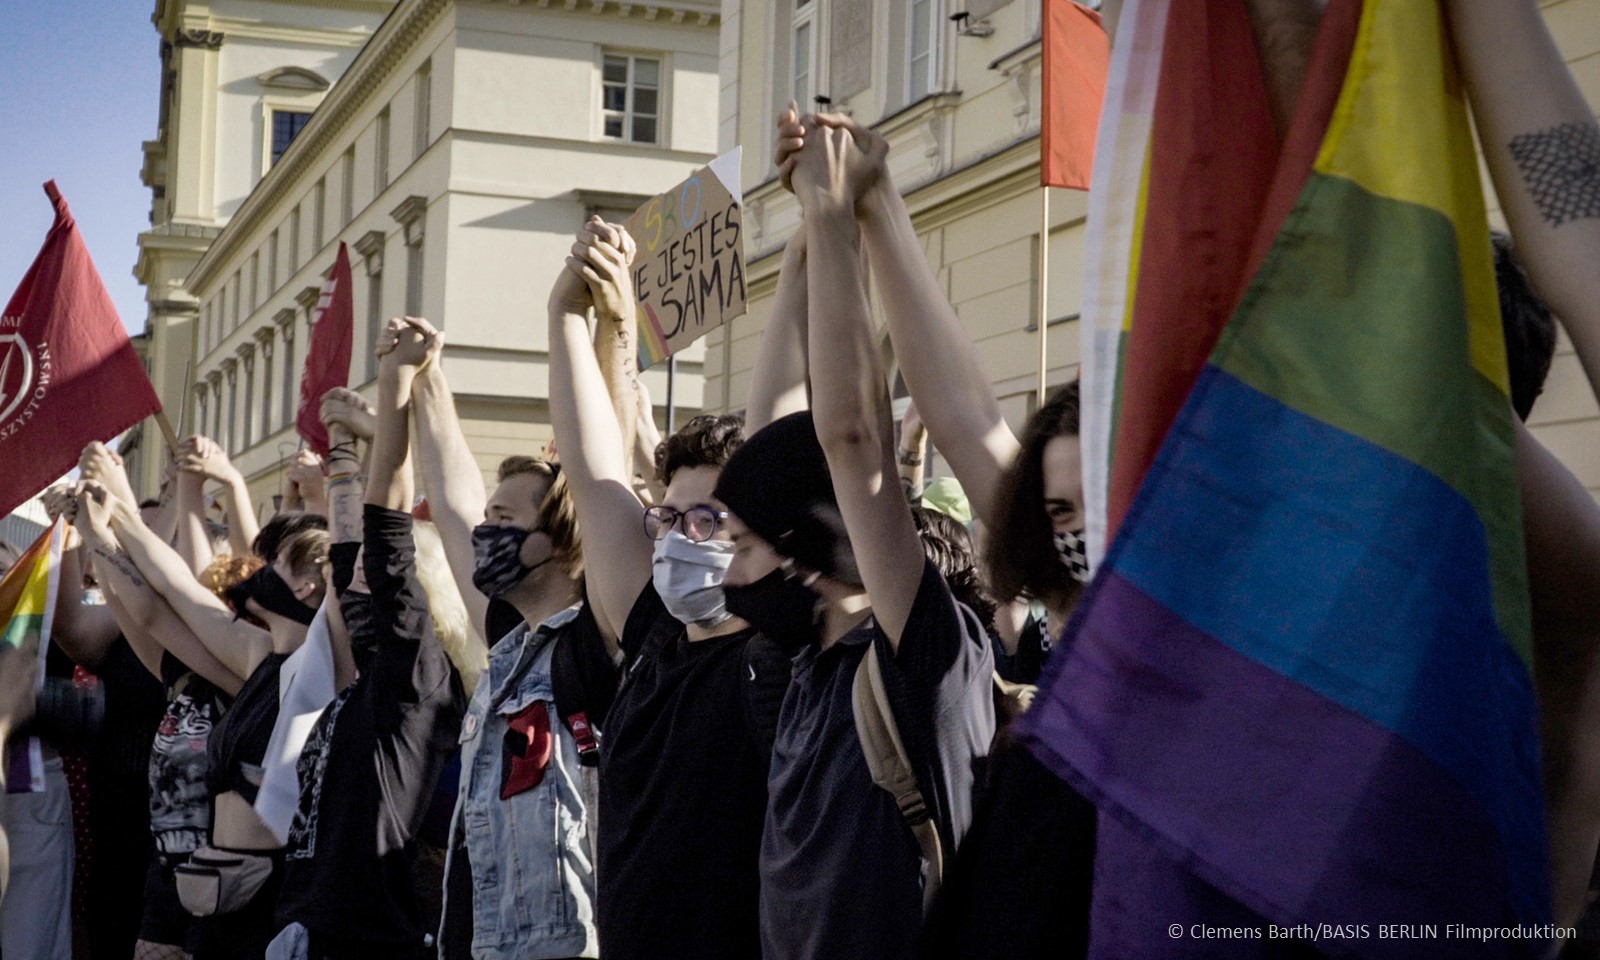 Filmstill aus "Und jetzt wir!": Teilnehmer einer LGBTQ-Demonstration in Warschau © Clemens Barth/BASIS BERLIN Filmproduktion